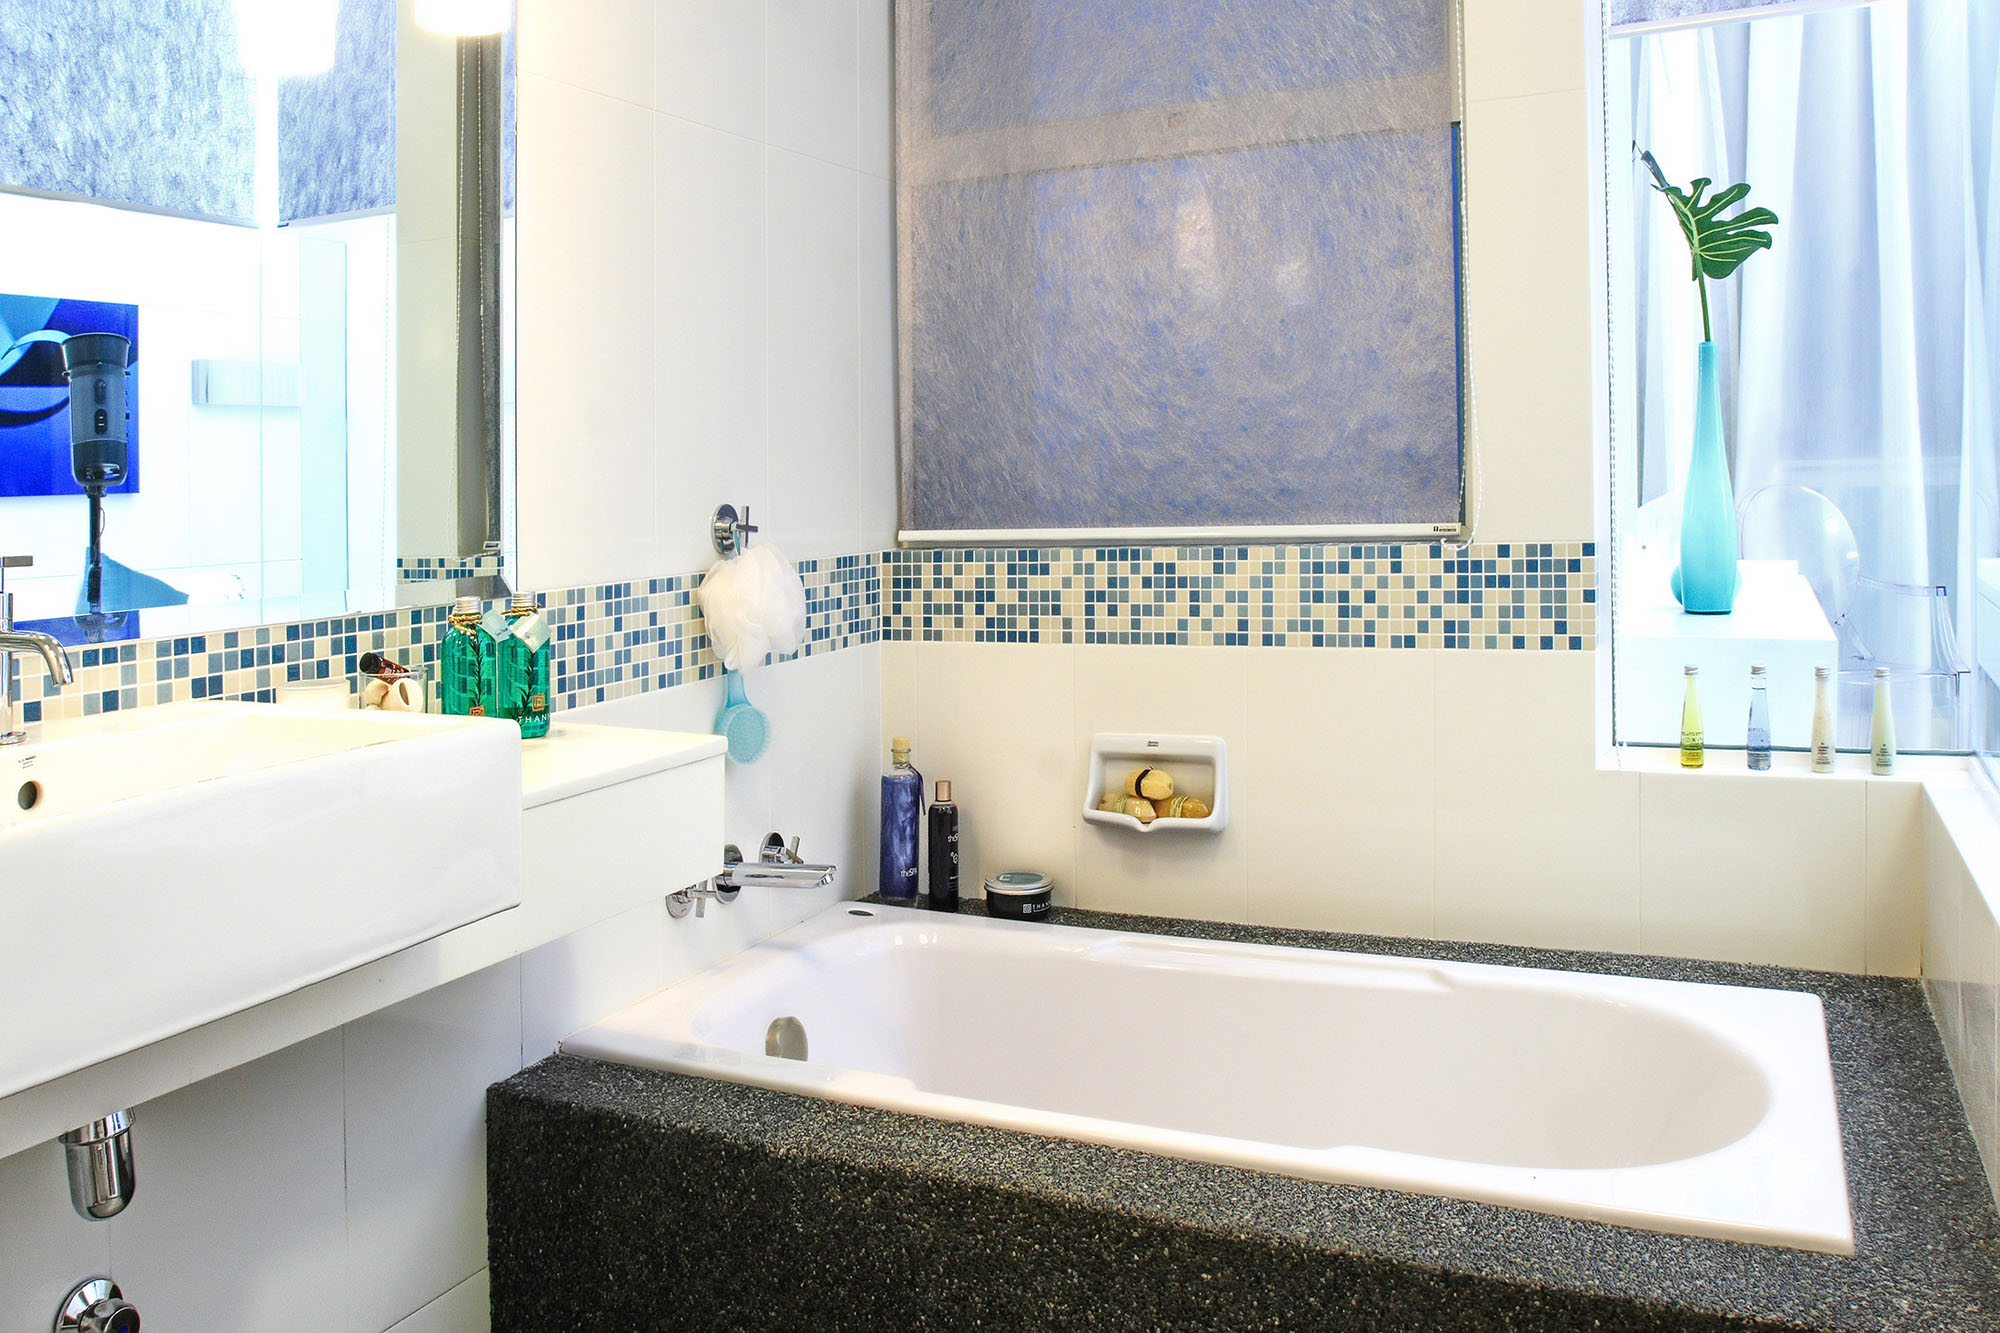 Мозаика и белая плитка в отделке ванной